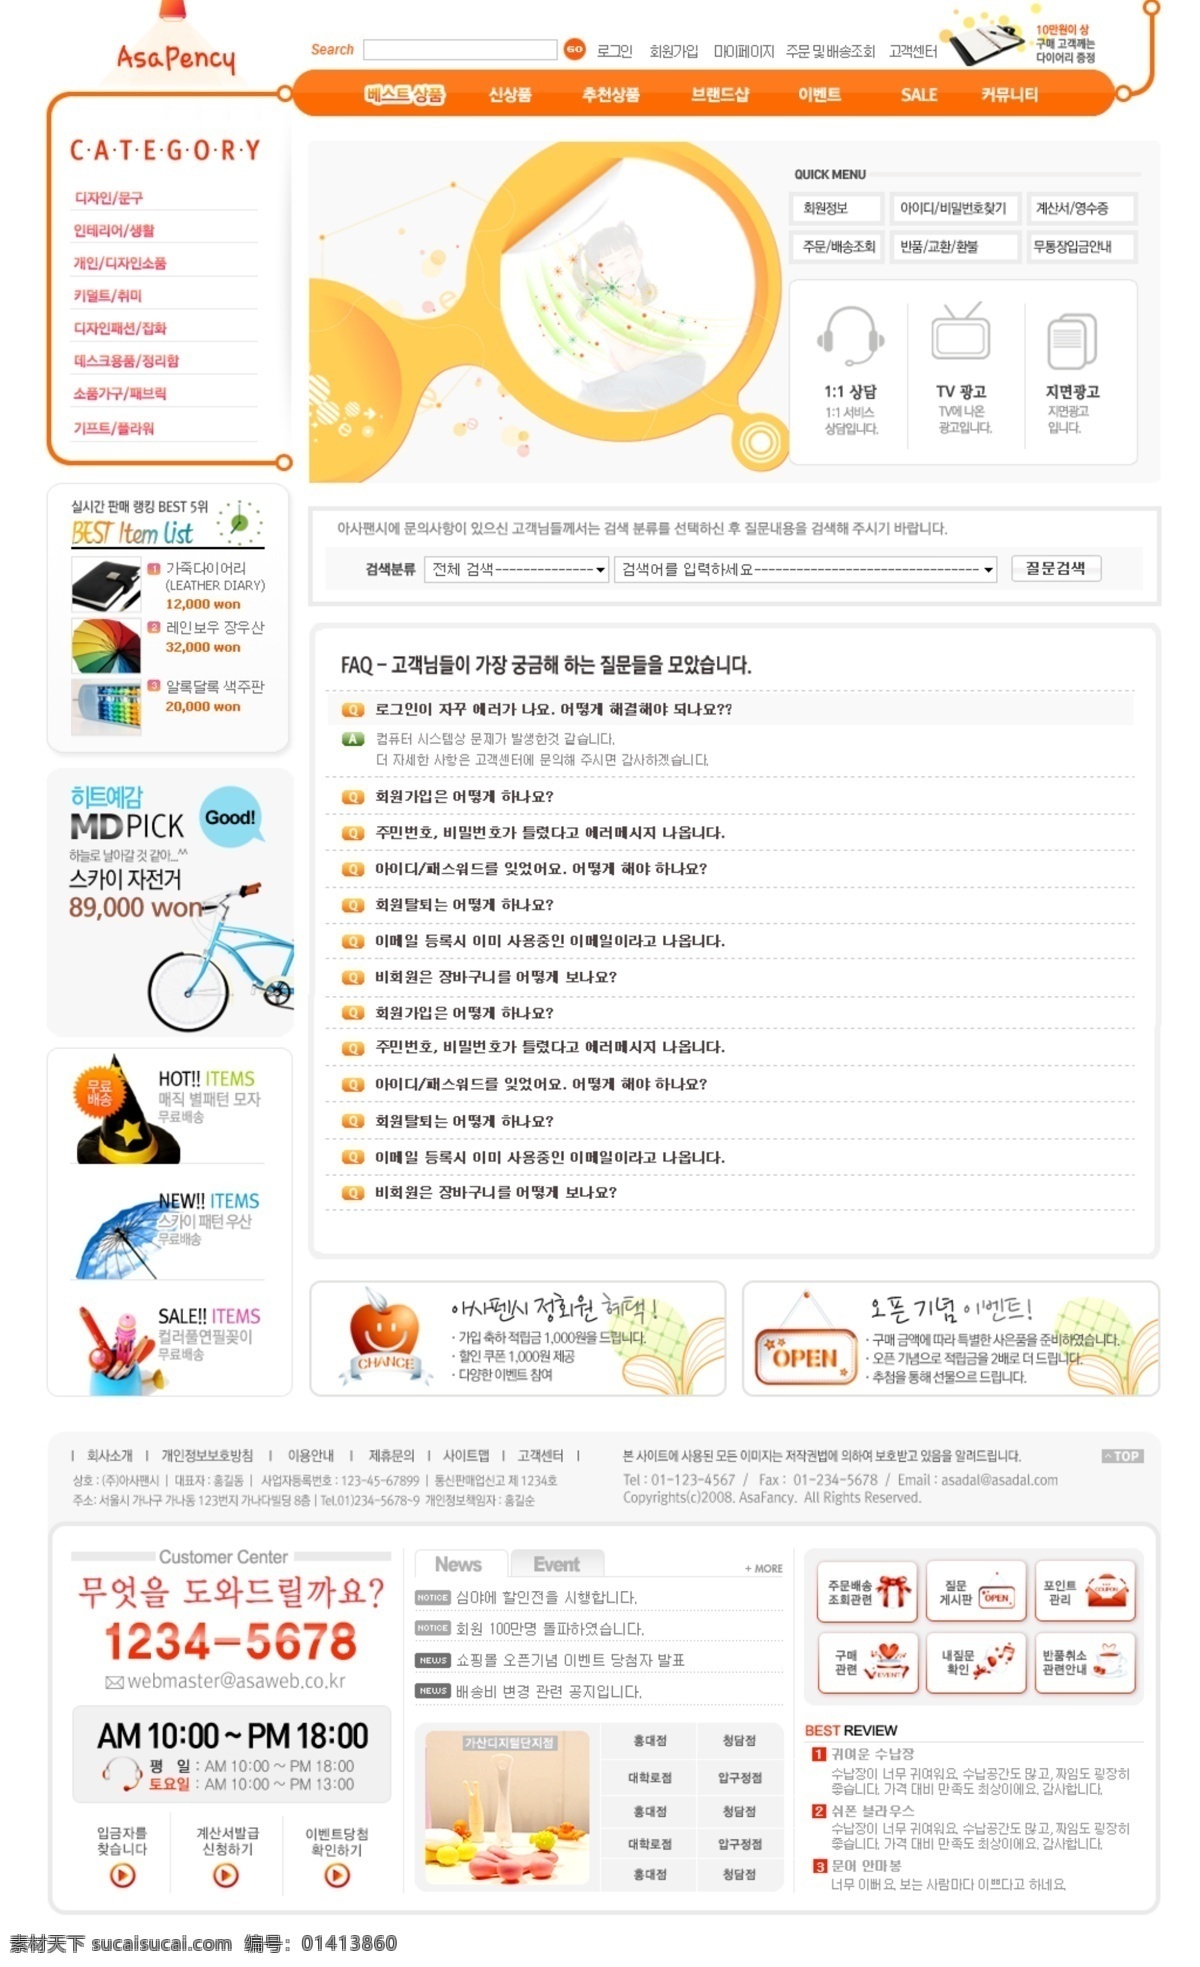 界面设计 网店模板 网页模板 源文件 家居 物品 网店 页面 模板下载 时尚 日用品 家庭用品 网站焦点图 韩文模板 网页素材 网页界面设计